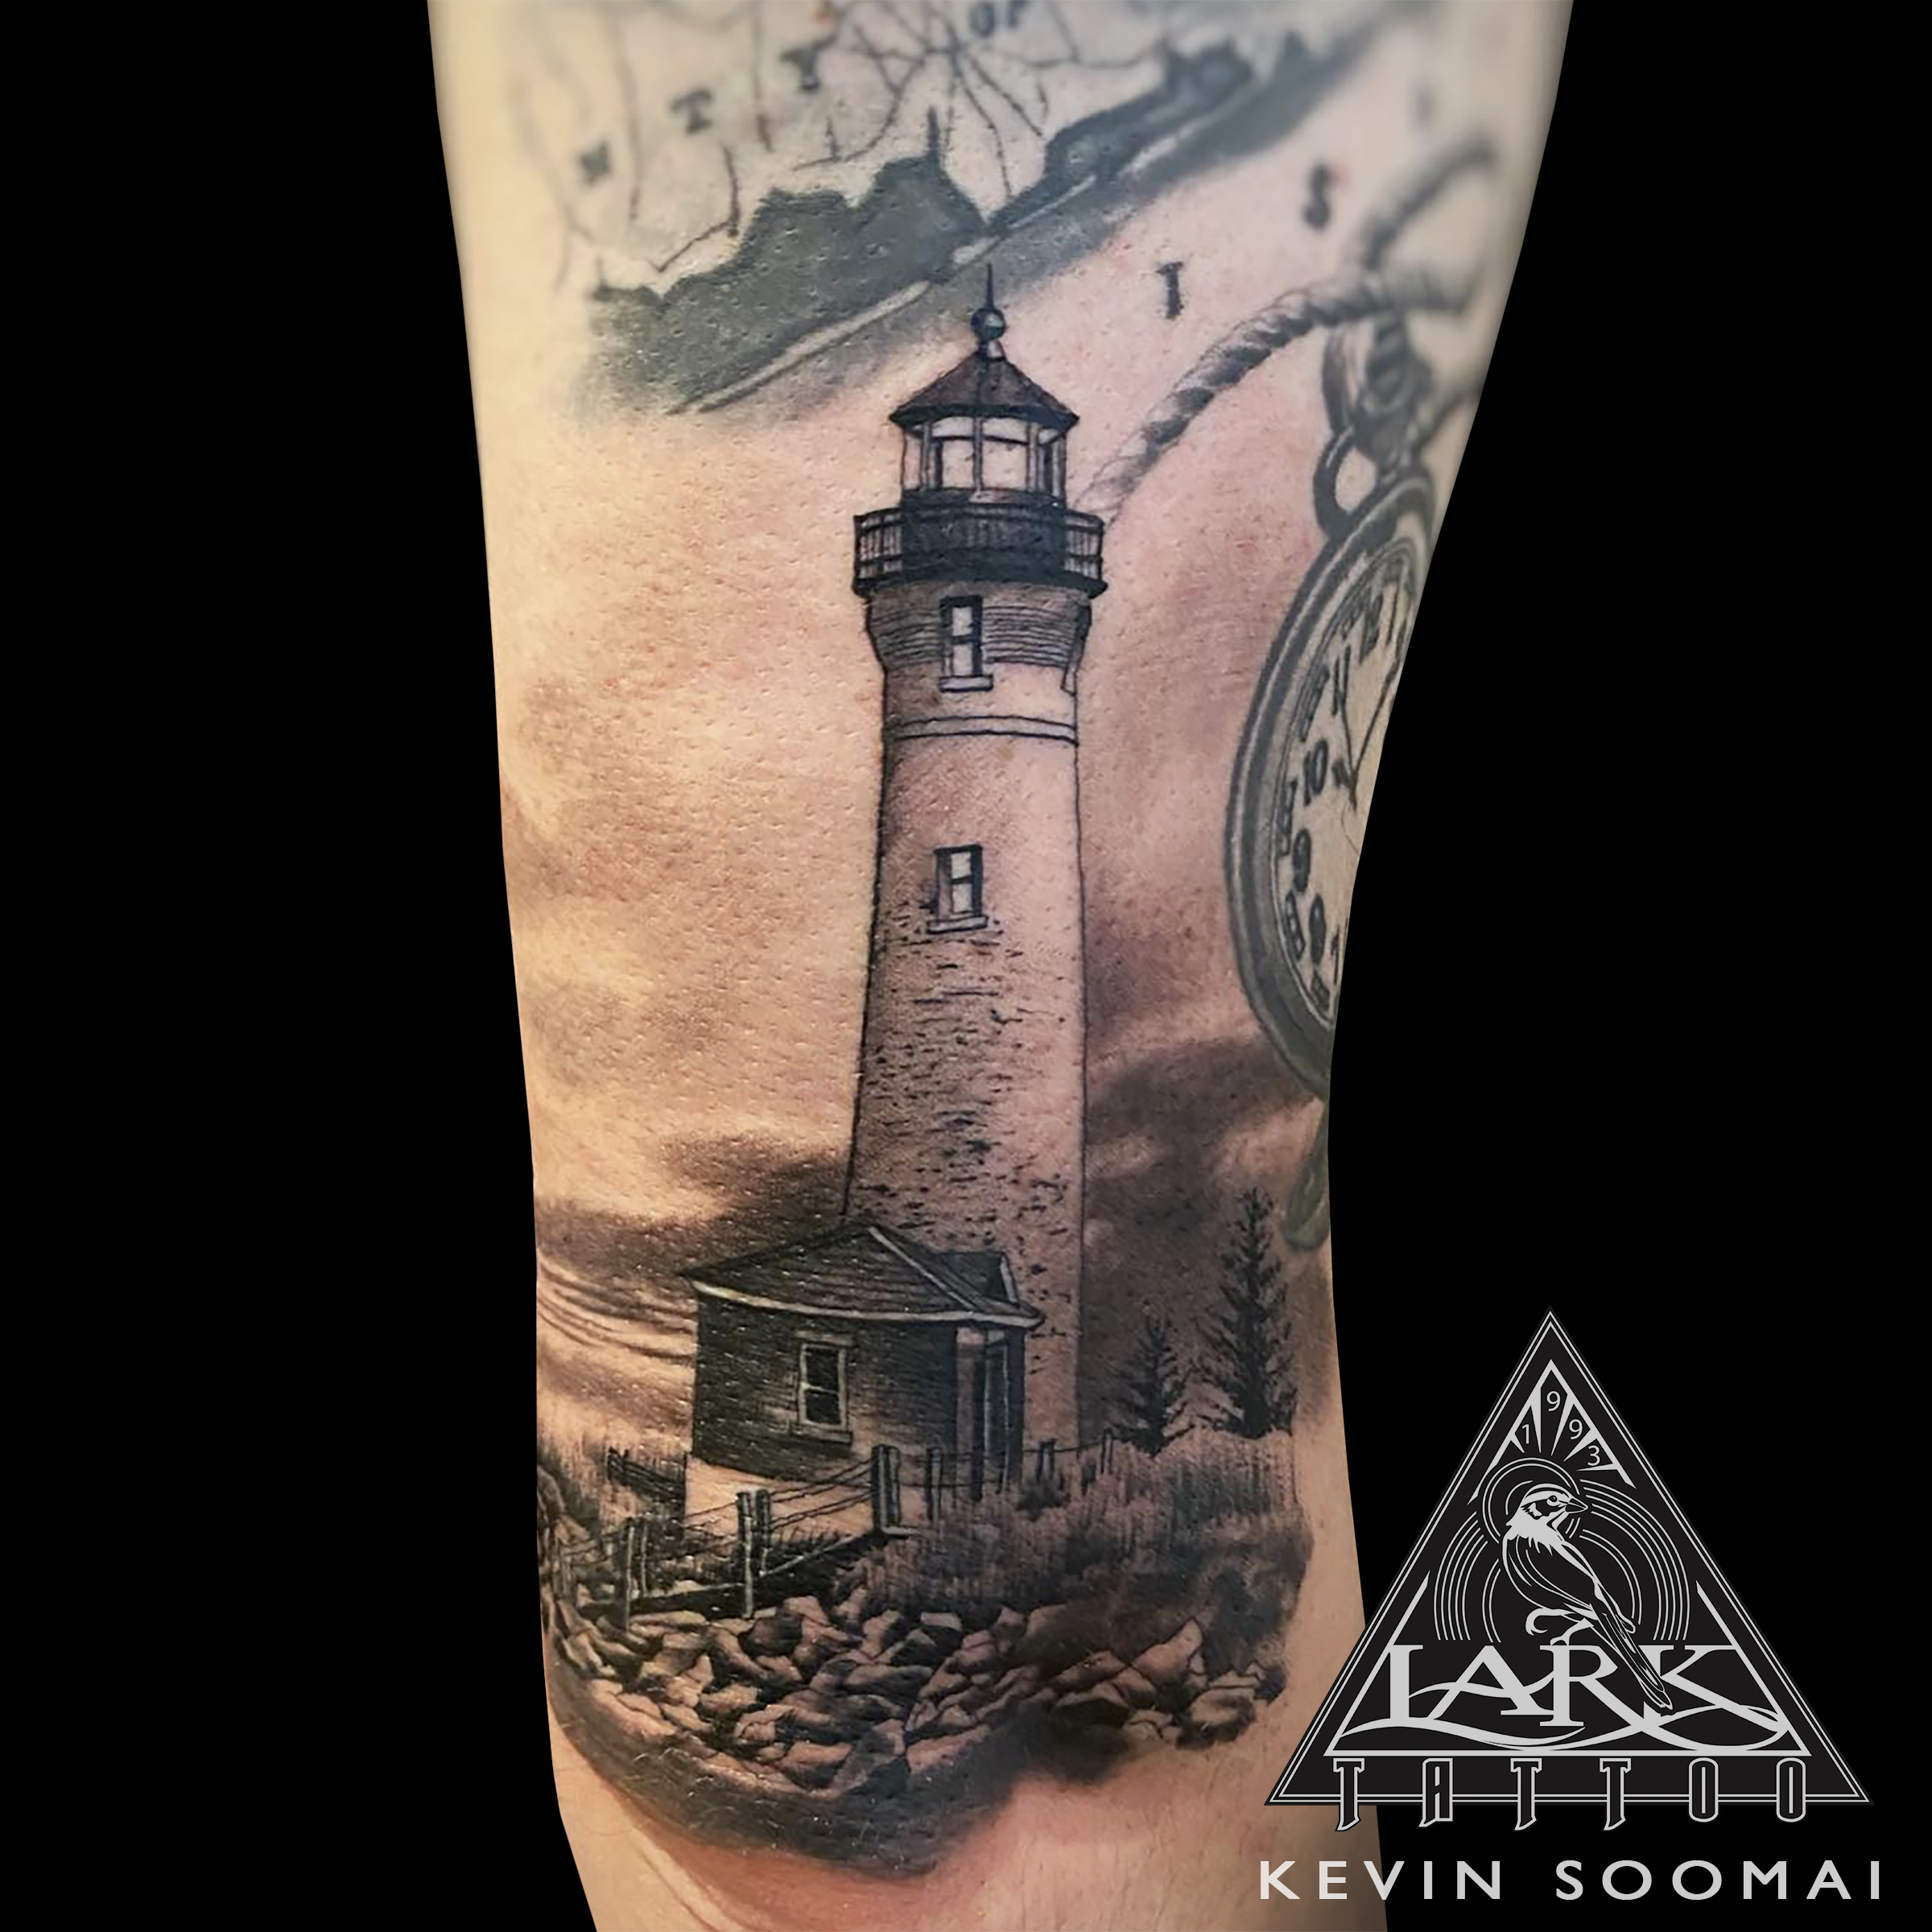 #LarkTattoo #KevinSoomai #KevinSoomaiLarkTattoo #Tattoo #Tattoos #Lighthouse #LighthouseTattoo #RealisticTattoo #RealismTattoo #TattooArtist #Tattoist #Tattooer #LongIslandTattooArtist #LongIslandTattooer #LongIslandTattoo #TattooOfTheDay #Tat #Tats #Tatts #Tatted #Inked #Ink #TattooInk #AmazingInk #AmazingTattoo #BodyArt #LarkTattooWestbury #Westbury #LongIsland #NY #NewYork #USA #Art #Tattedup #InkedUp #LarkTattoos